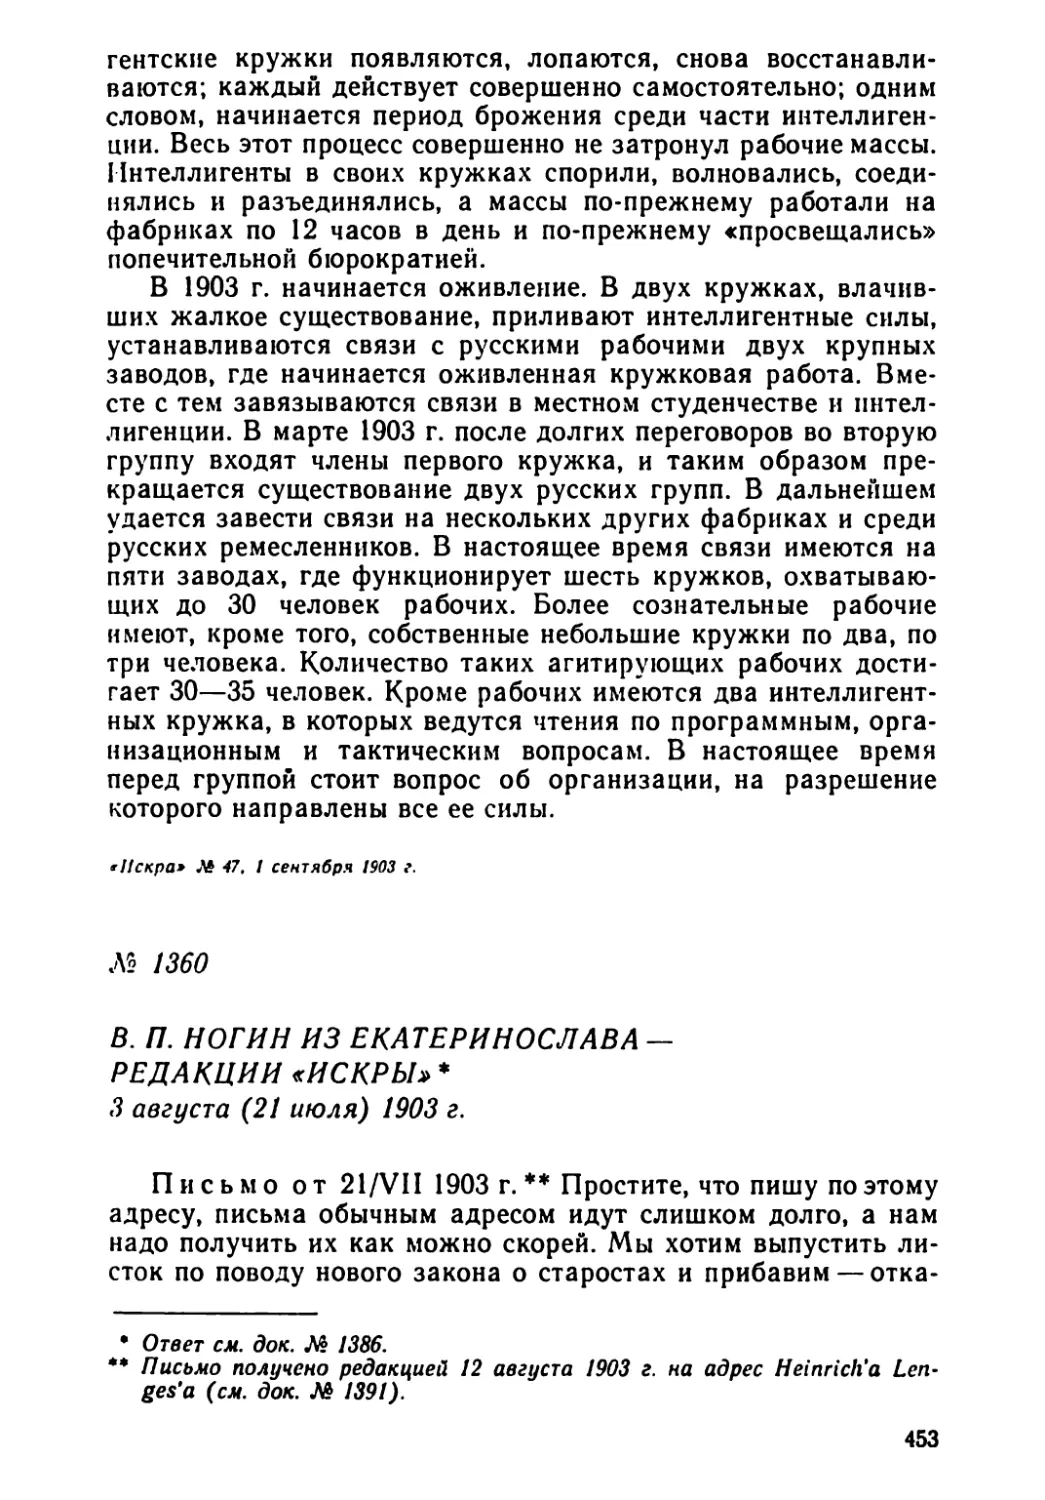 Август
№ 1360 В. П. Ногин из Екатеринослава — редакции «Искры». 3 августа